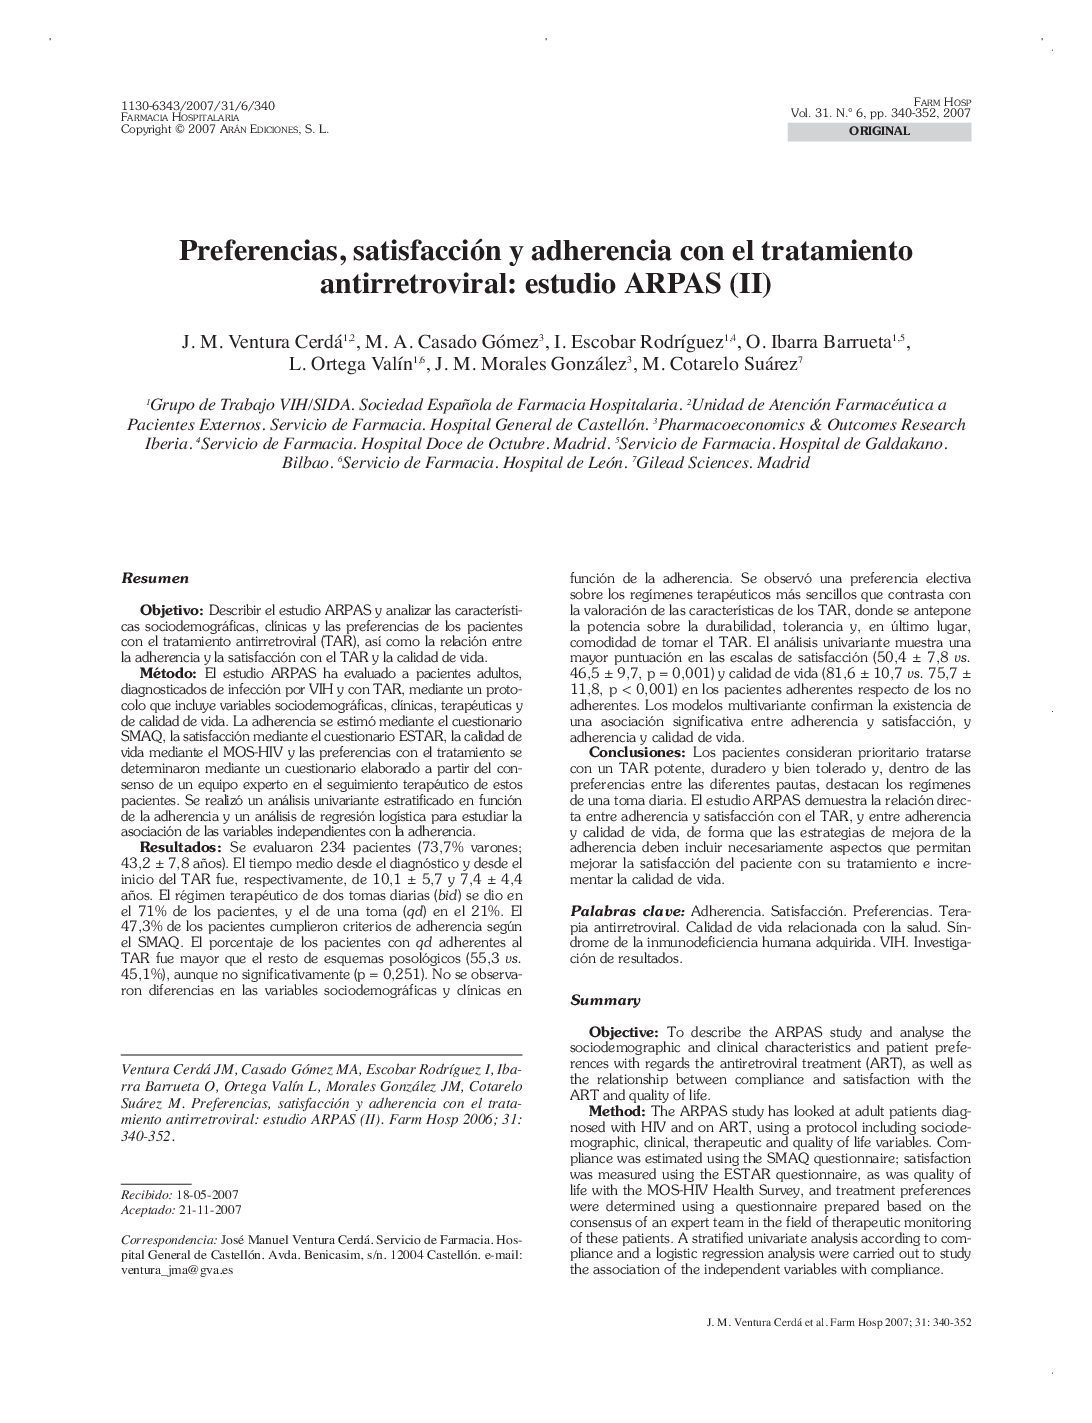 Preferencias, satisfacción y adherencia con el tratamiento antirretroviral: estudio ARPAS (II)